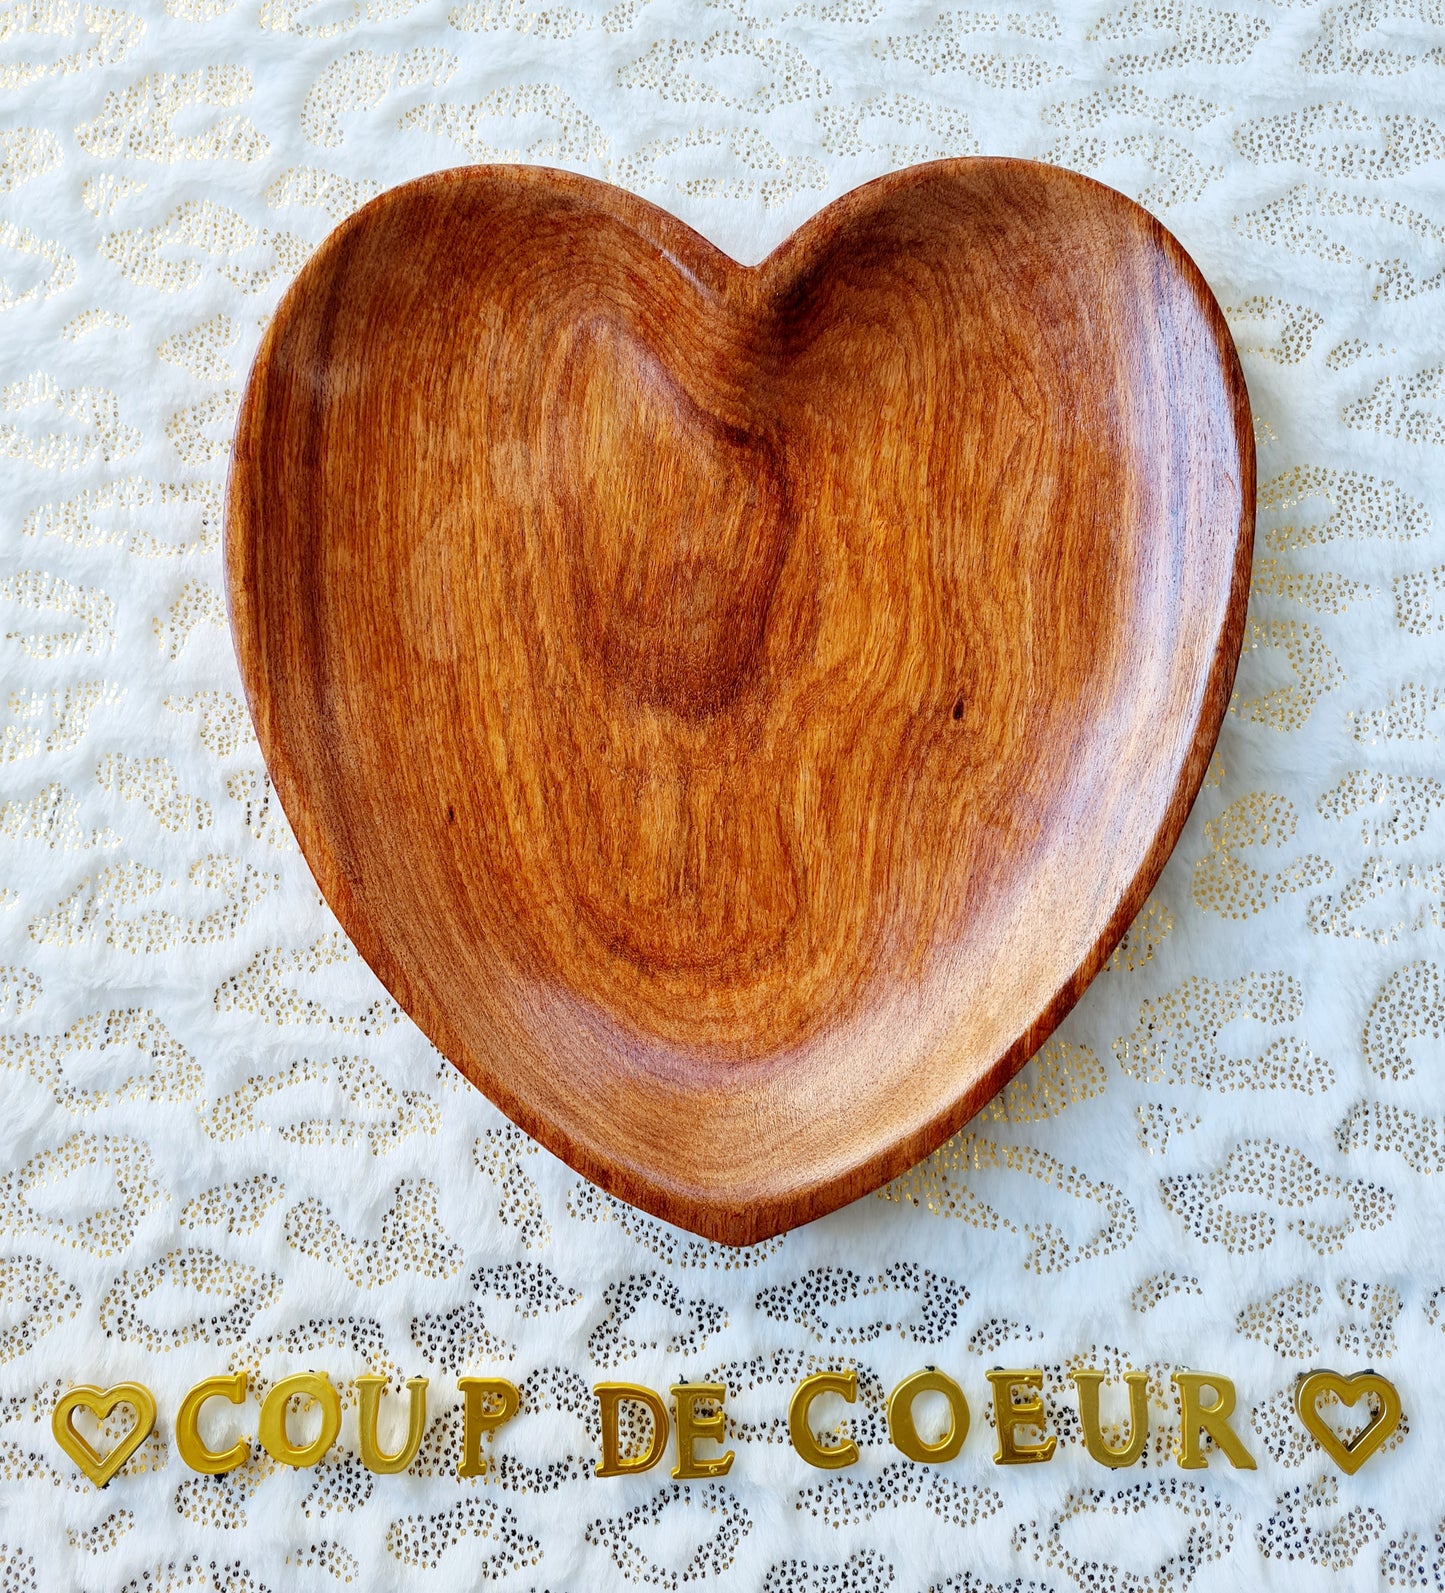 Petite assiette en bois en forme de Coeur